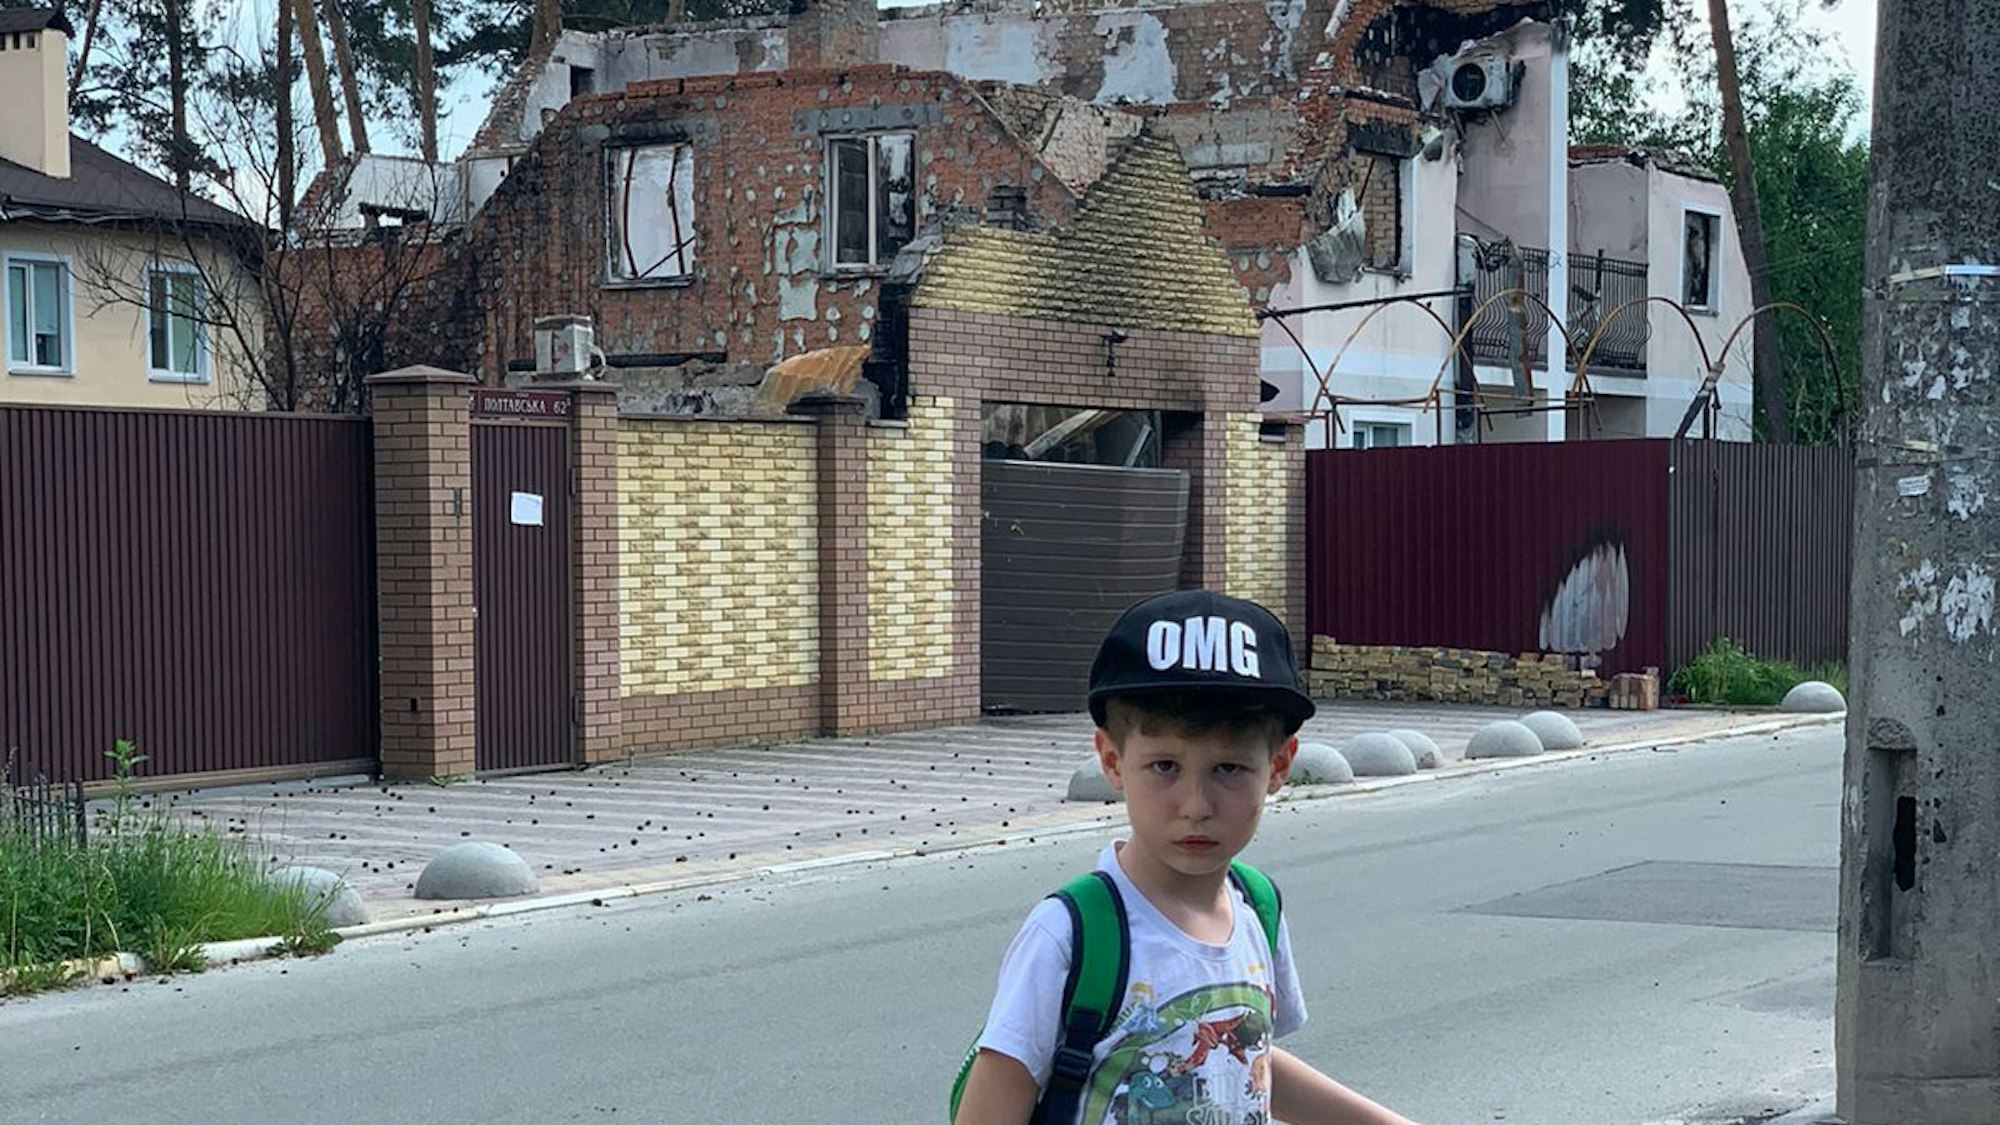 Olgas Sohn Alexander steht mit seinem City-Roller auf den Straßen von Irpin. Hinter ihm sieht man die Ruinen von zerstörten Häusern.